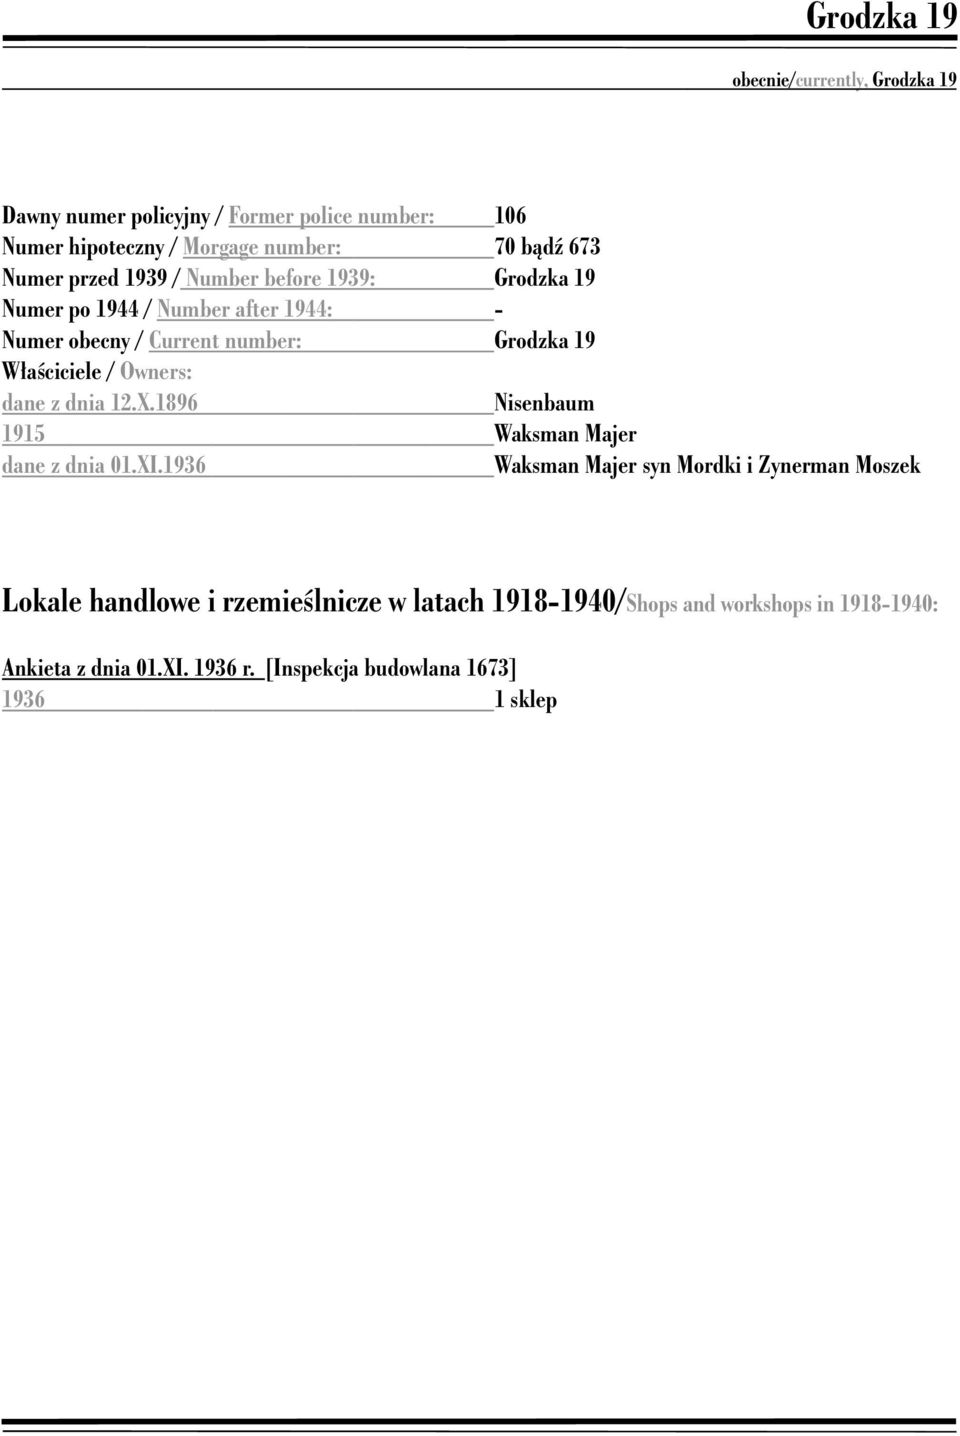 Właściciele / Owners: dane z dnia 12.X.1896 Nisenbaum 1915 Waksman Majer dane z dnia 01.XI.